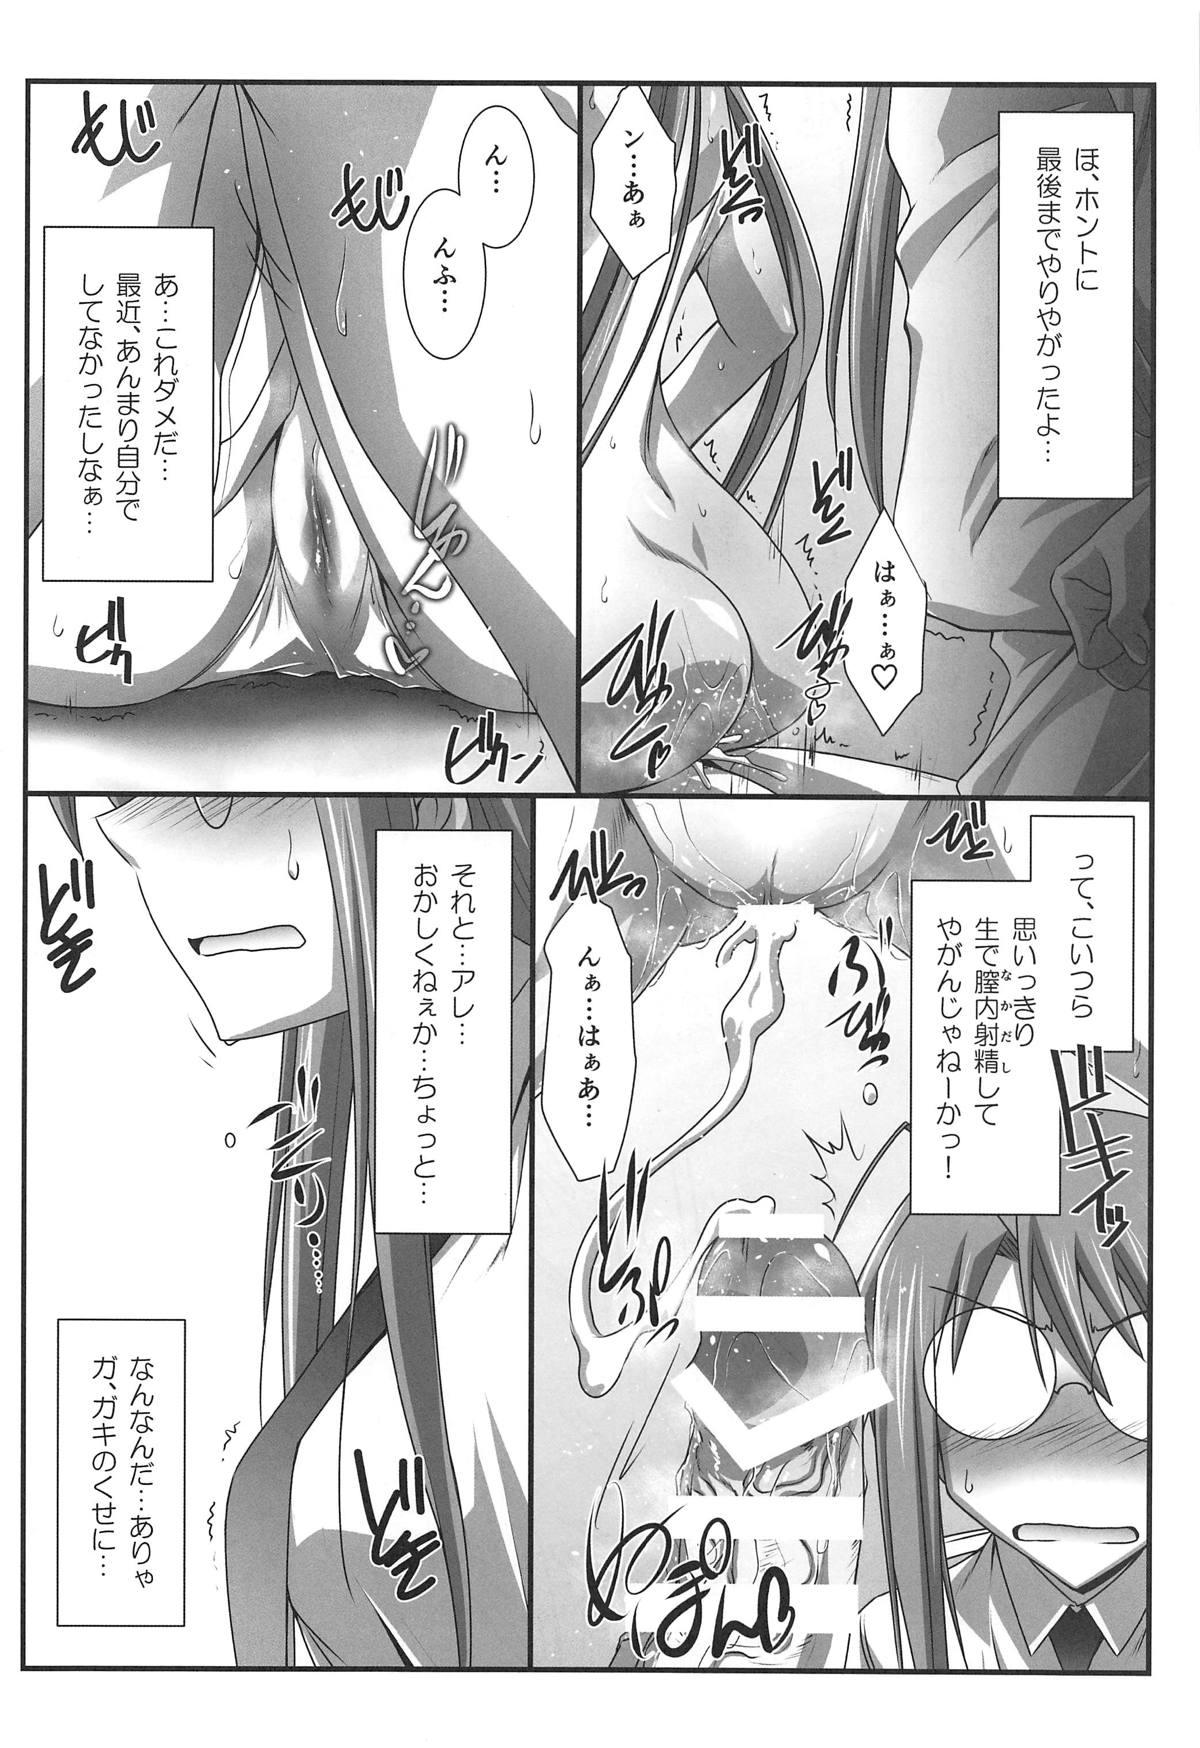 Celebrity Astral Bout Ver. 37 - Mahou sensei negima Sapphic Erotica - Page 7